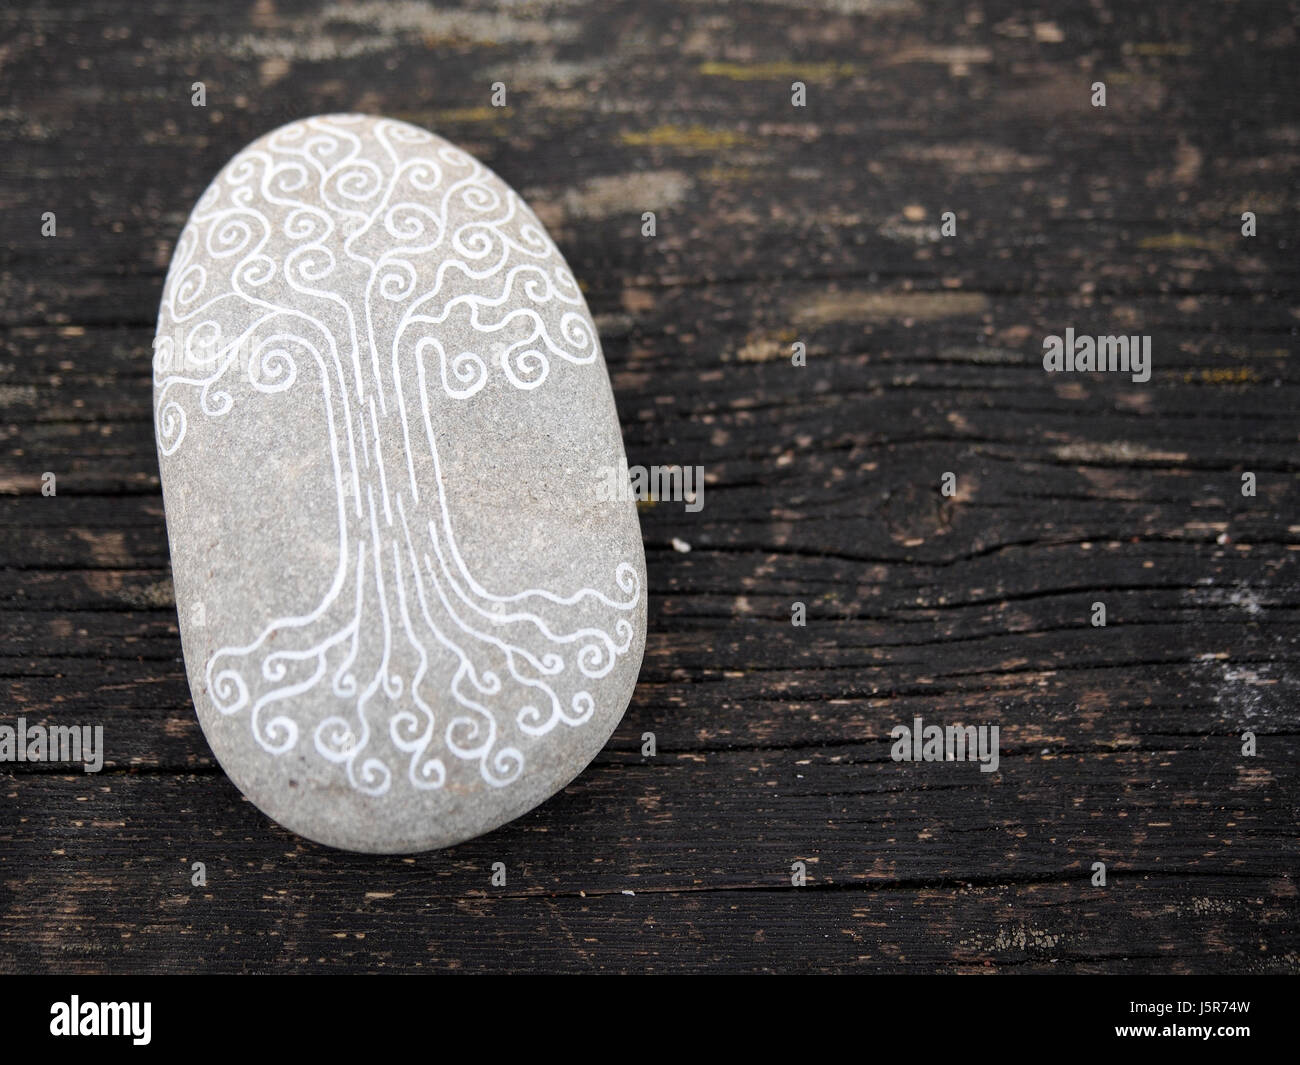 Baum des Lebens-Symbol auf ein grauen polierten Stein gemalt. Stockfoto